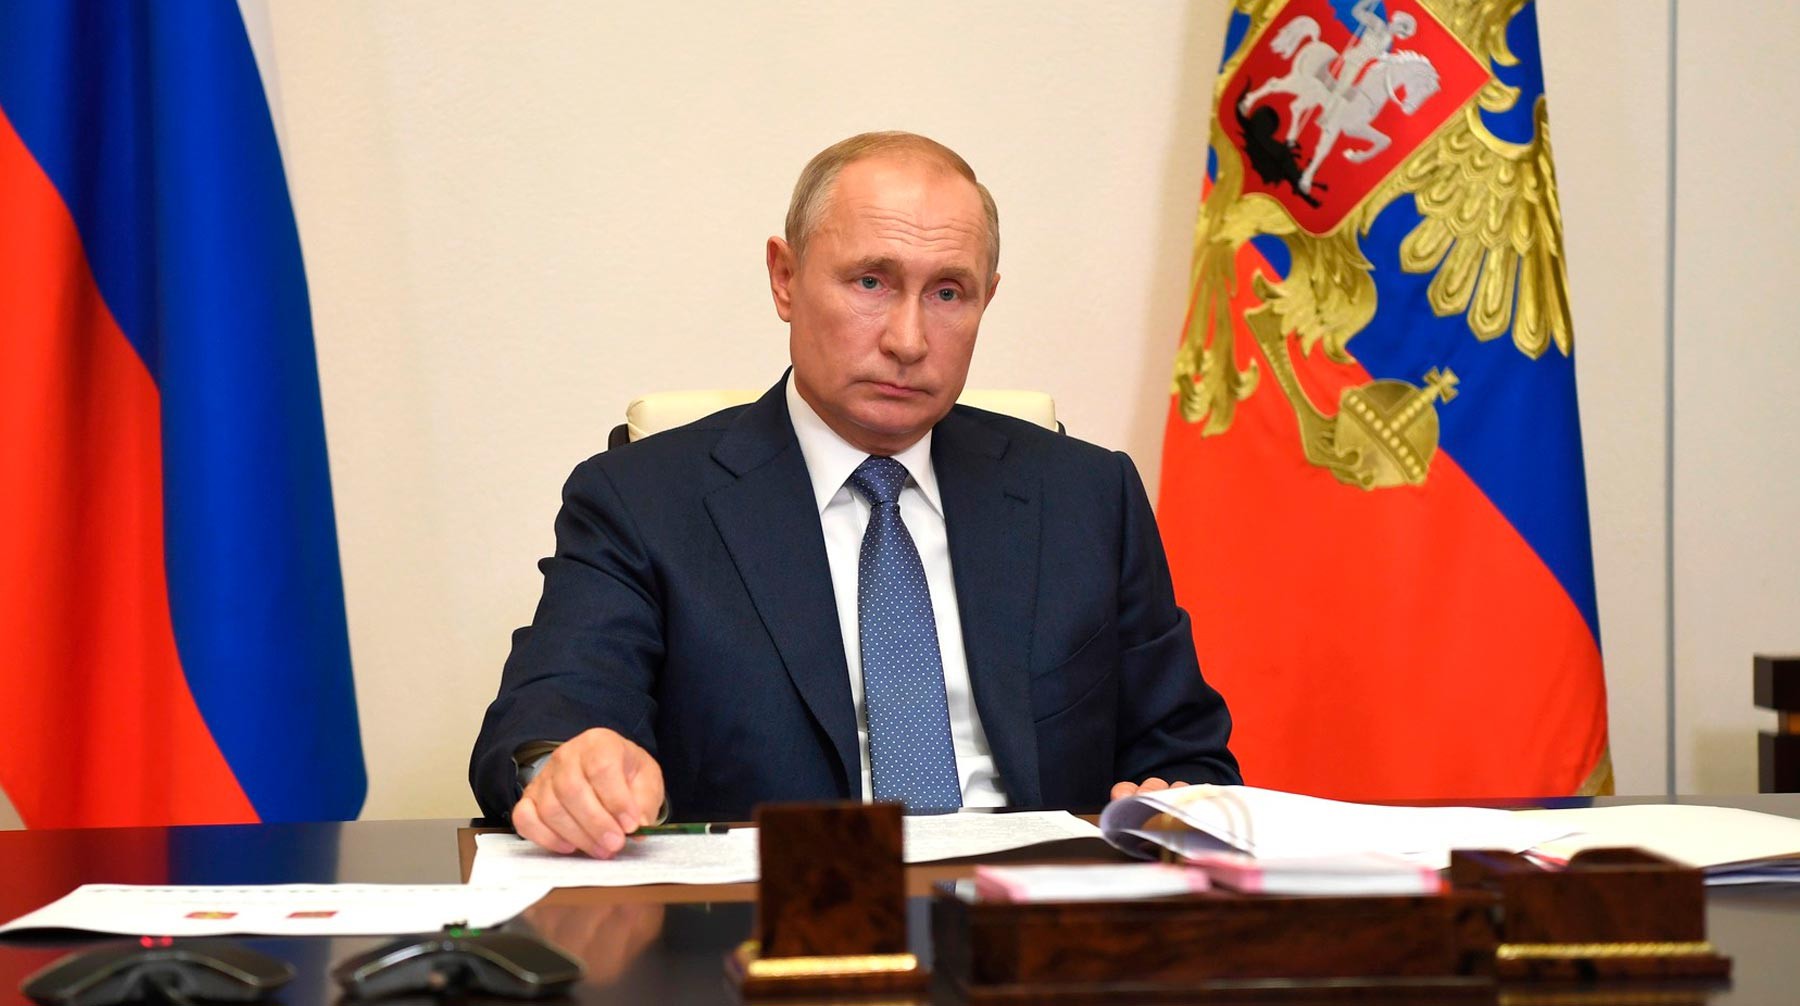 Dailystorm - Путин заявил, что борьба с пандемией должна дать толчок для решения нацпроблем